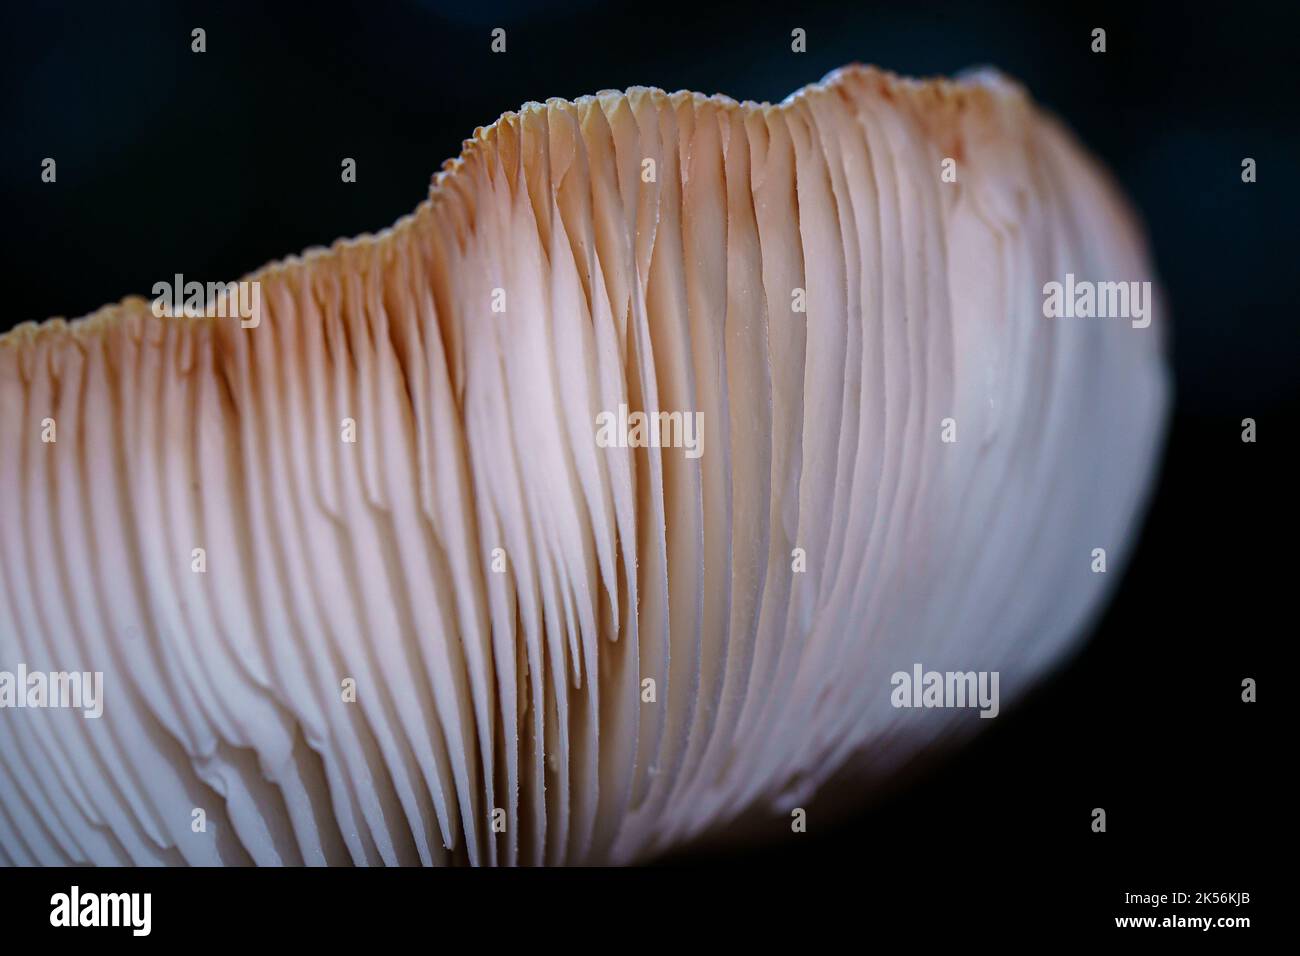 Le lamelle a fungo sul lato inferiore della capsula producono spore microscopiche necessarie alla riproduzione del fungo. Foto Stock